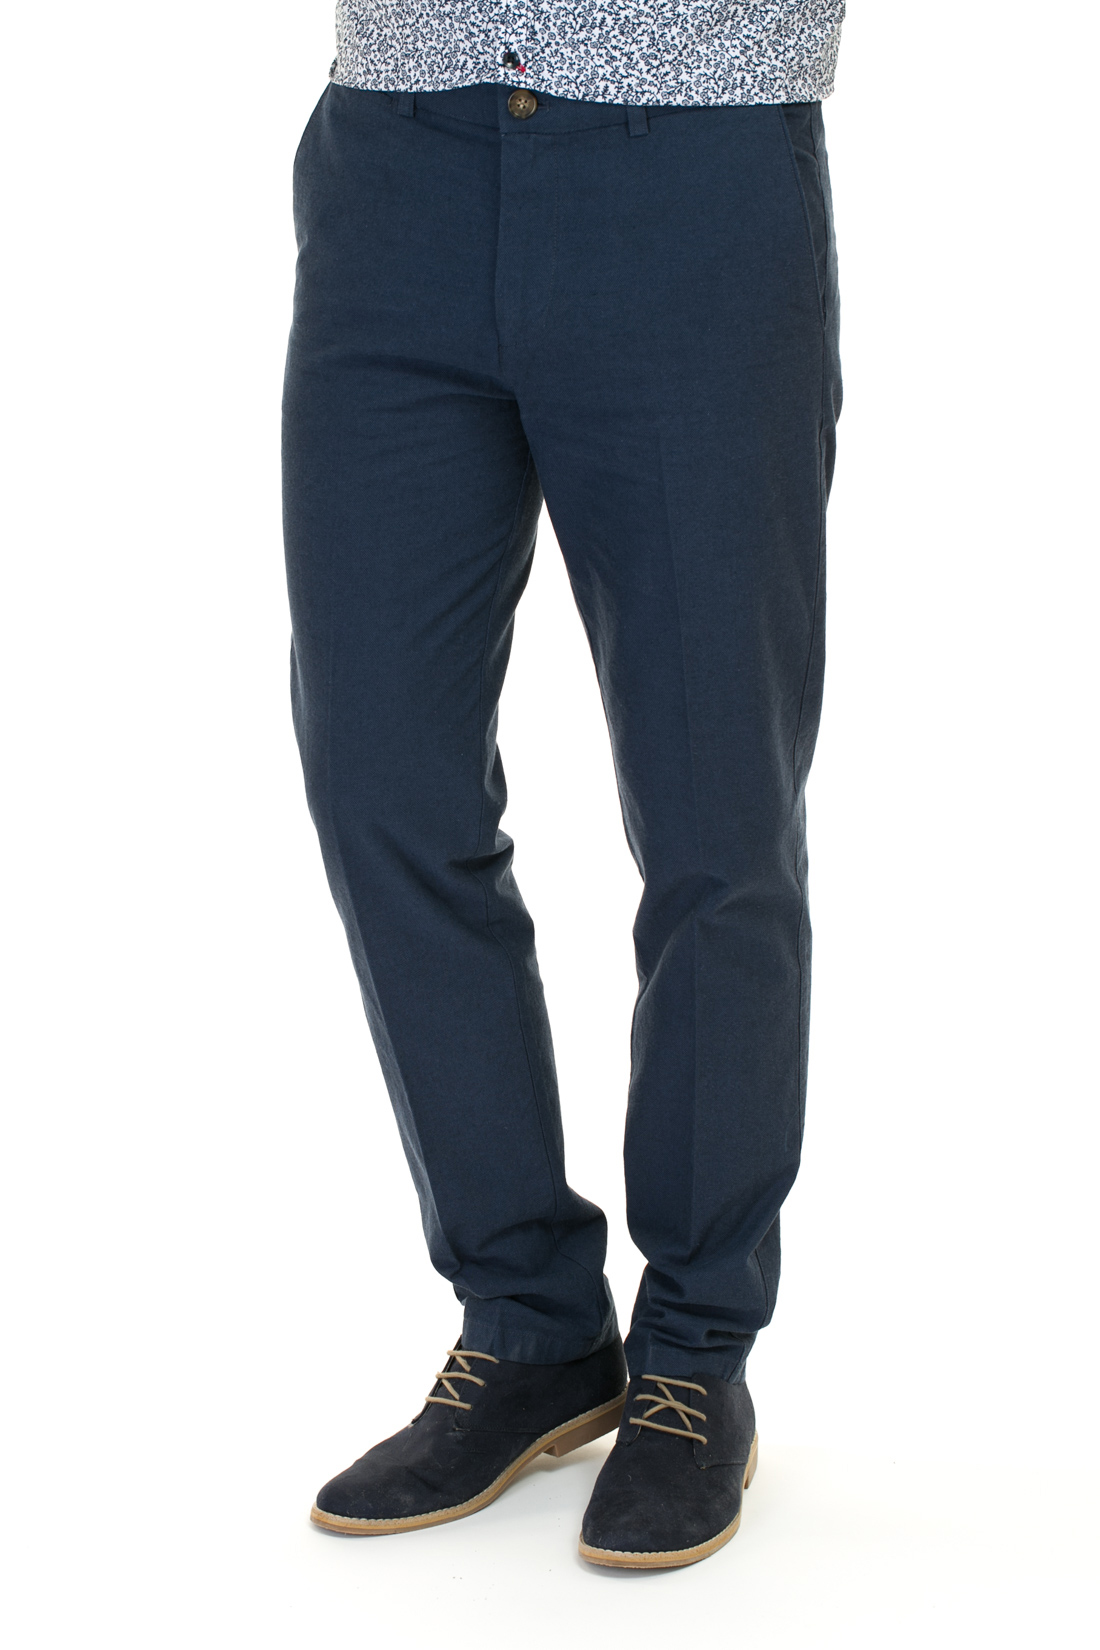 Хлопковые брюки (арт. baon B797008), размер XL, цвет синий Хлопковые брюки (арт. baon B797008) - фото 1